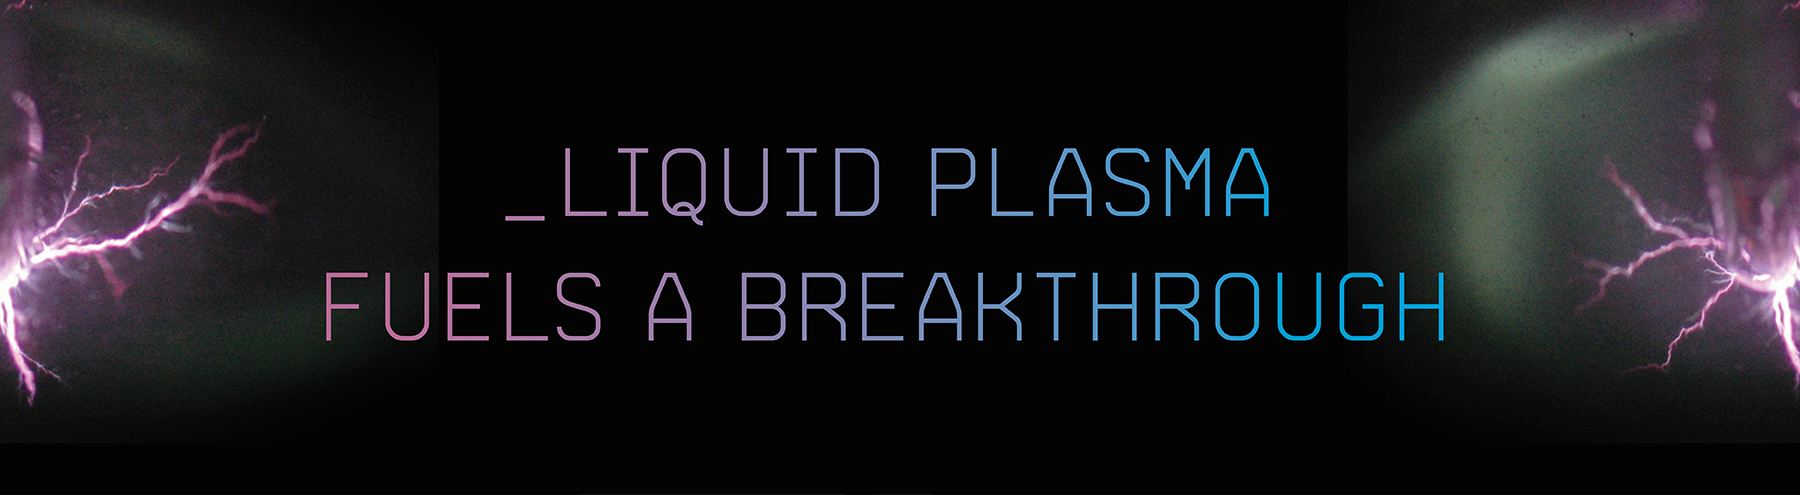 Liquid Plasma Fuels a Breakthrough